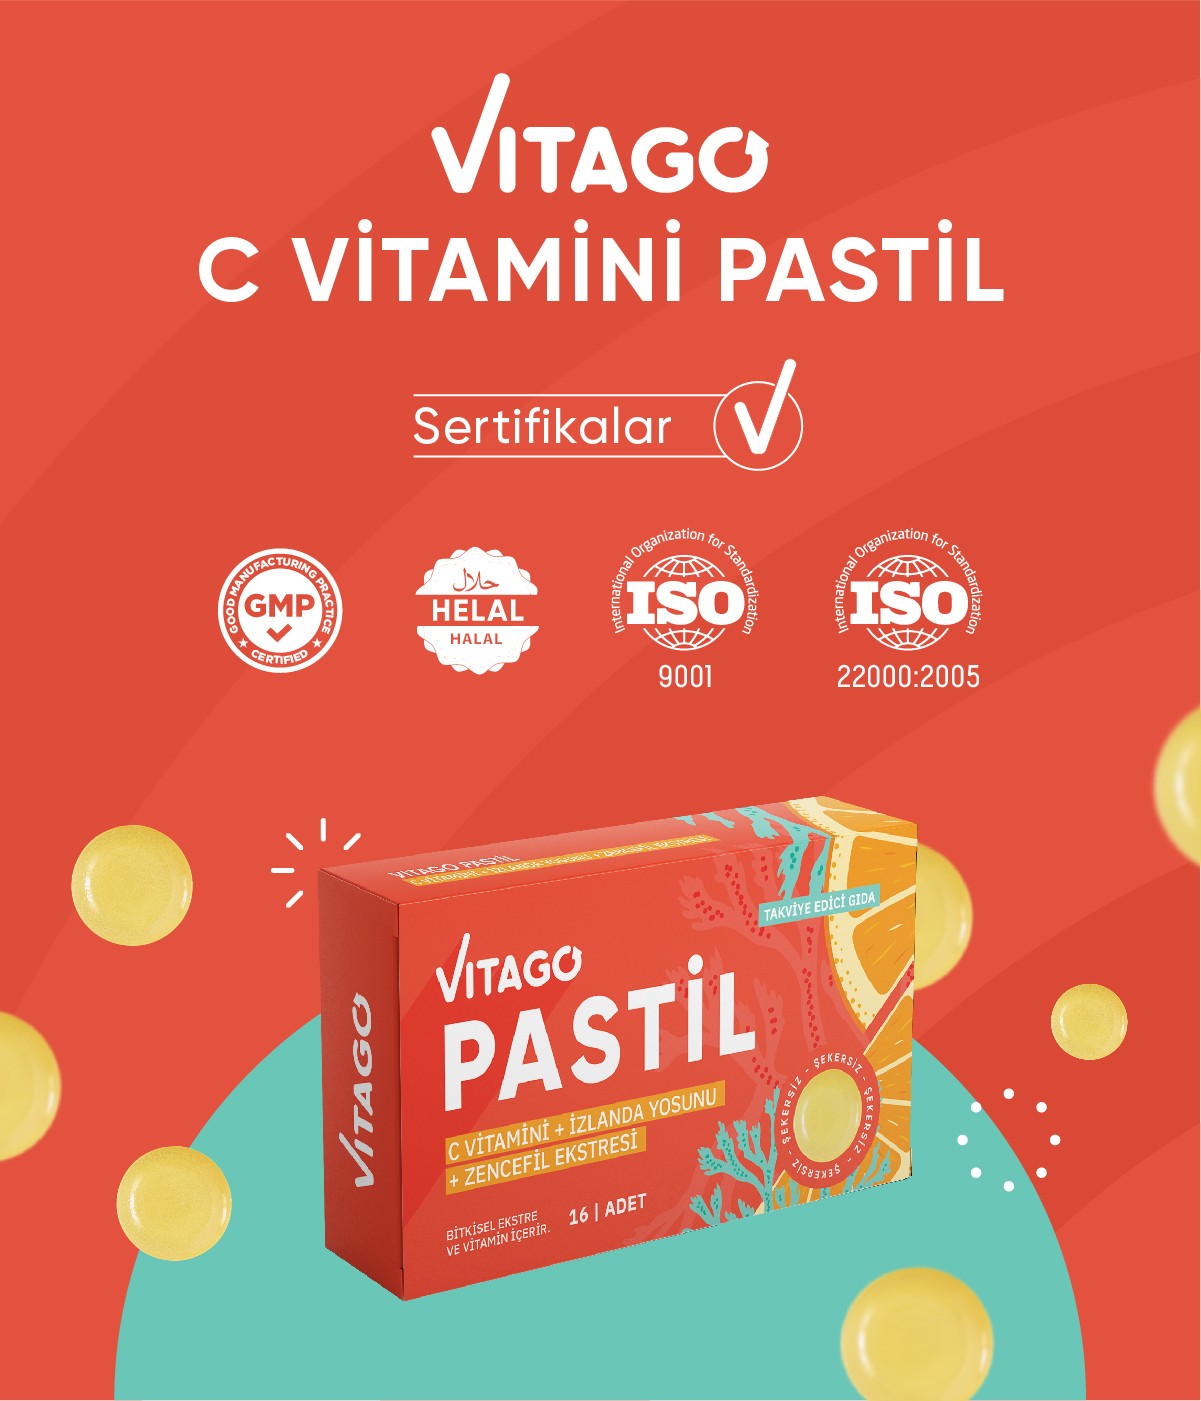 Vitago Pastil Vitamin C, İzlanda Yosunu Ve Zencefil Ekstresi İçeren 16'lı Takviye Edici Gıda